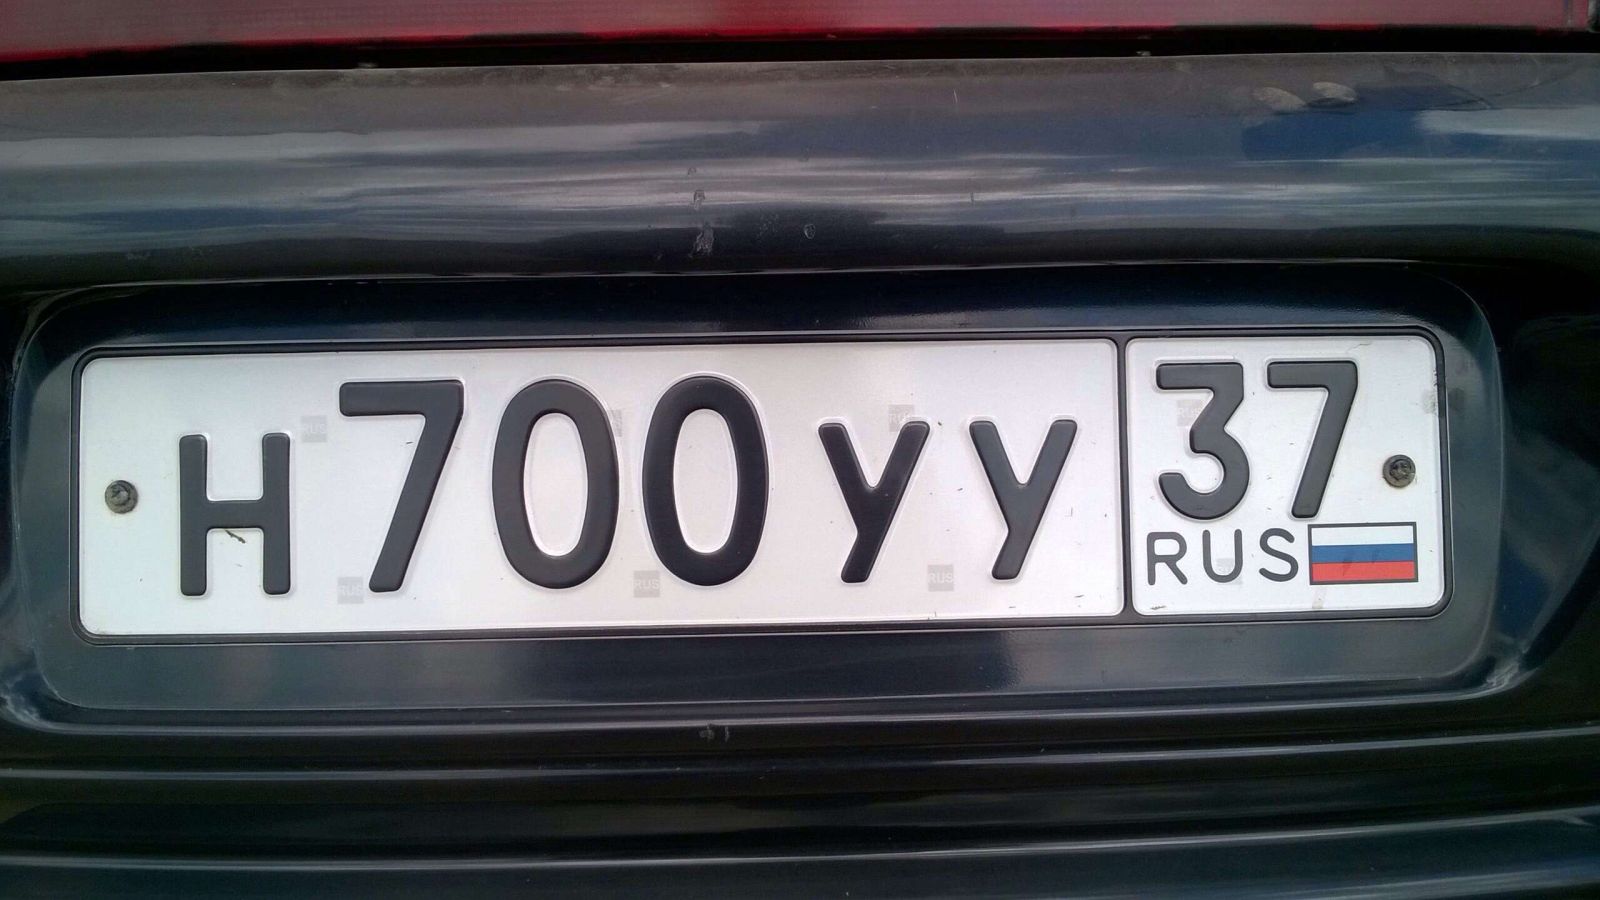 Автономера на машину. Автомобильные номера. Гос номер. Номерной знак машины. Русские номера автомобилей.